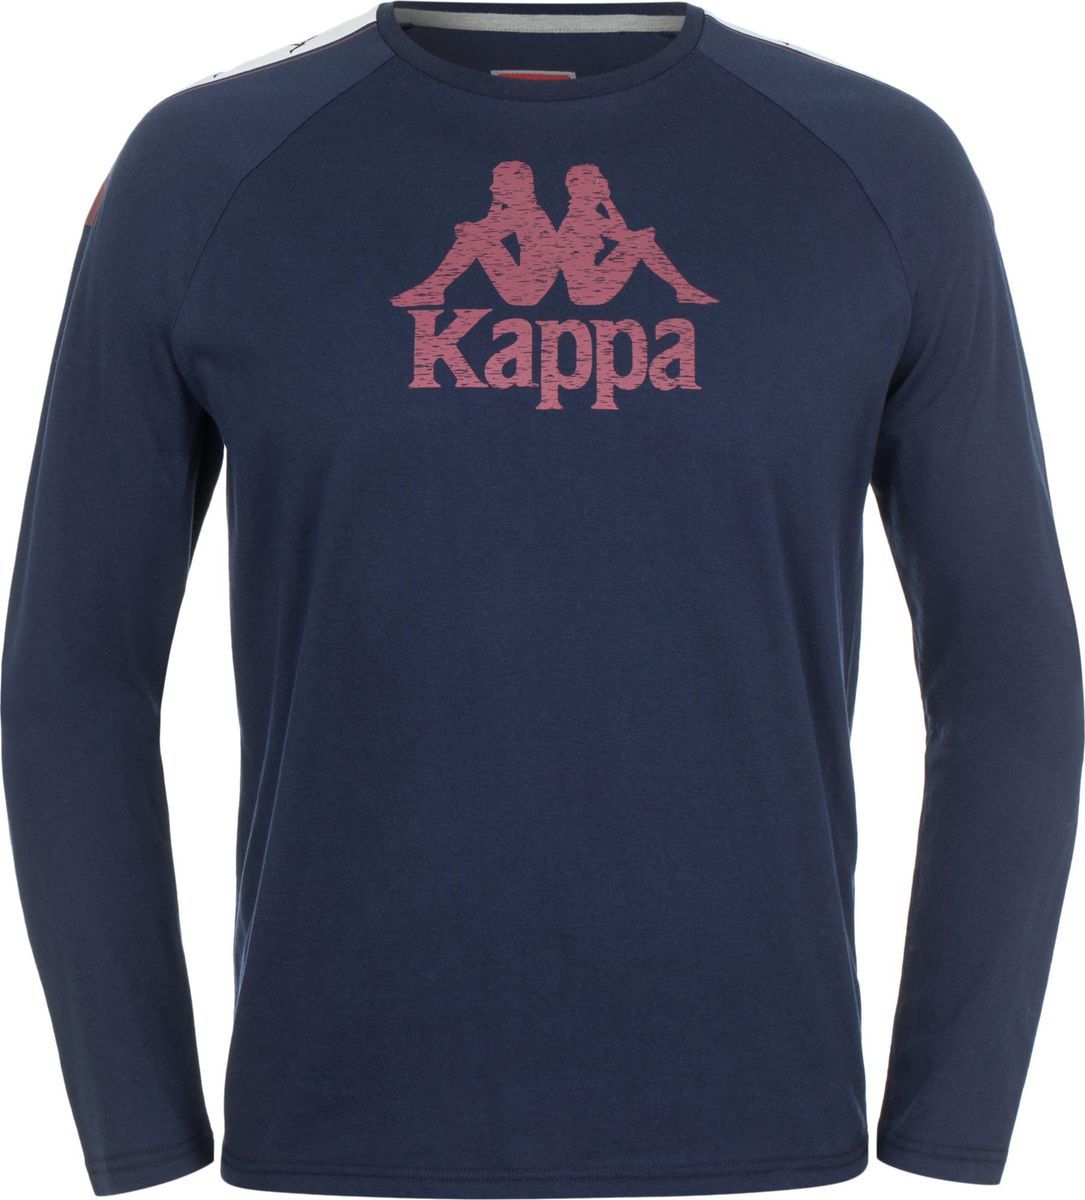   Kappa Men's Jumper, : -. 303SZD0-X1Z.  L (50)